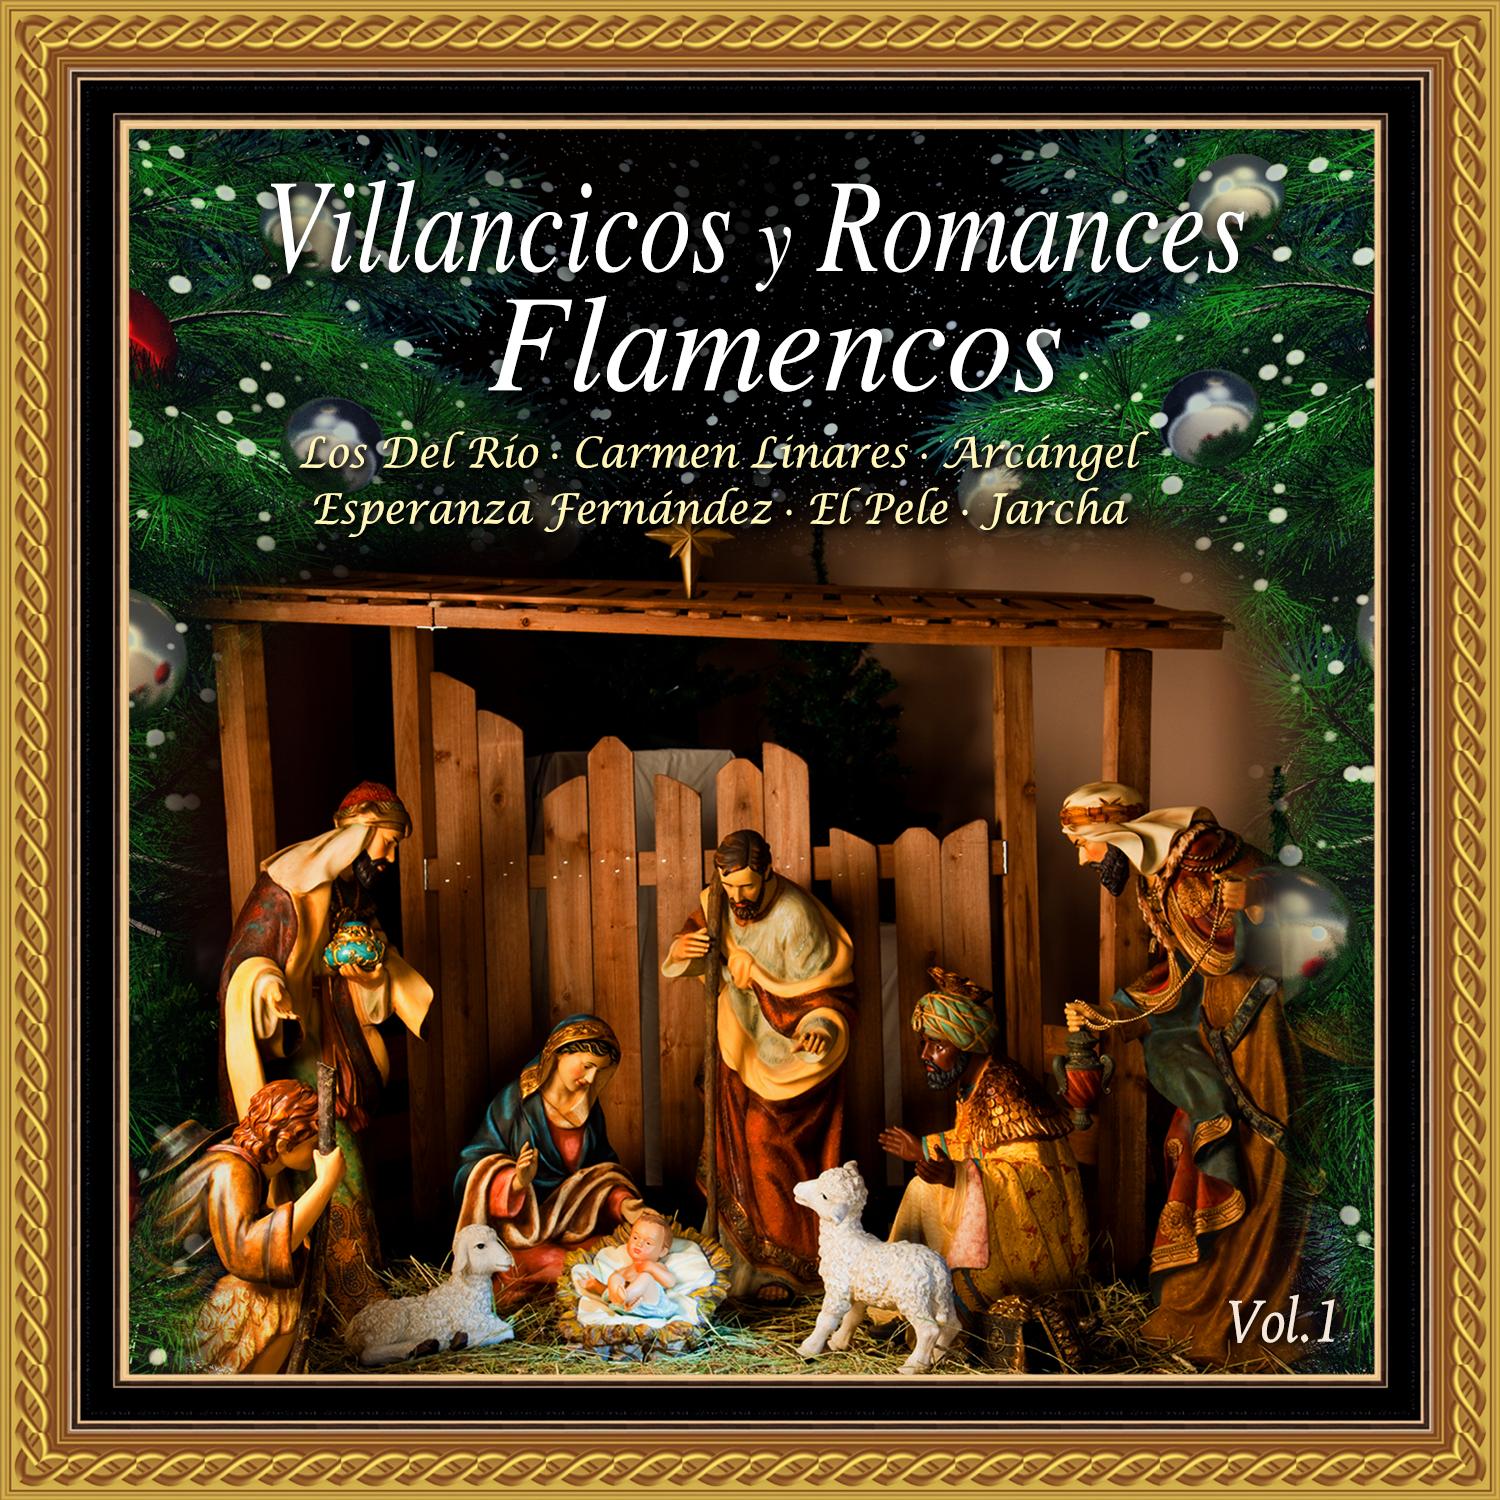 Villancicos y Romances Flamencos Vol. 1